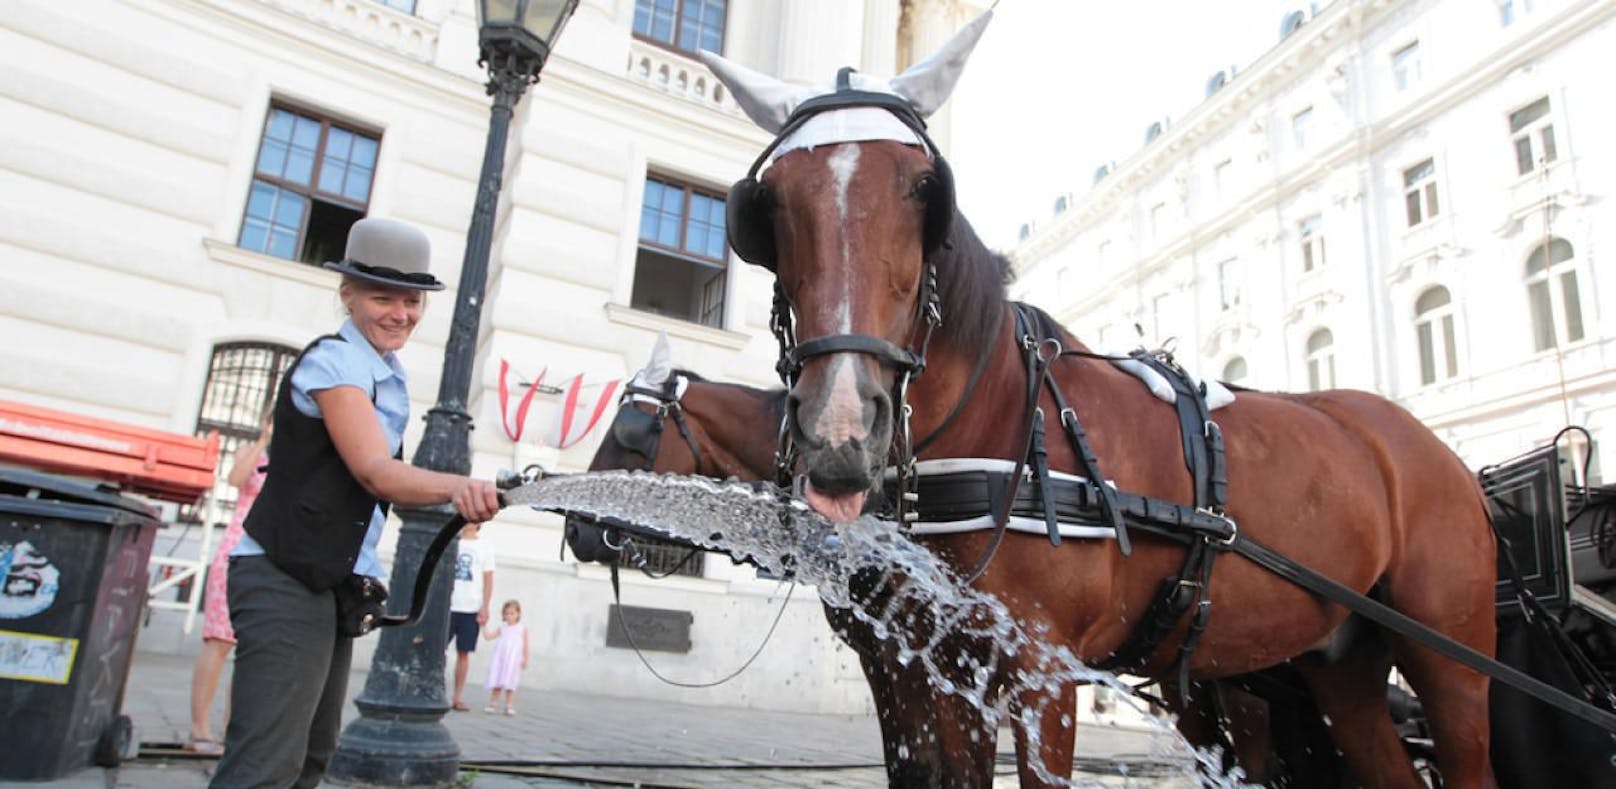 Eine Fiaker-Fahrerin gönnt ihrem Pferd eine erfrischende Dusche und einen herzhaften Schluck Wasser.